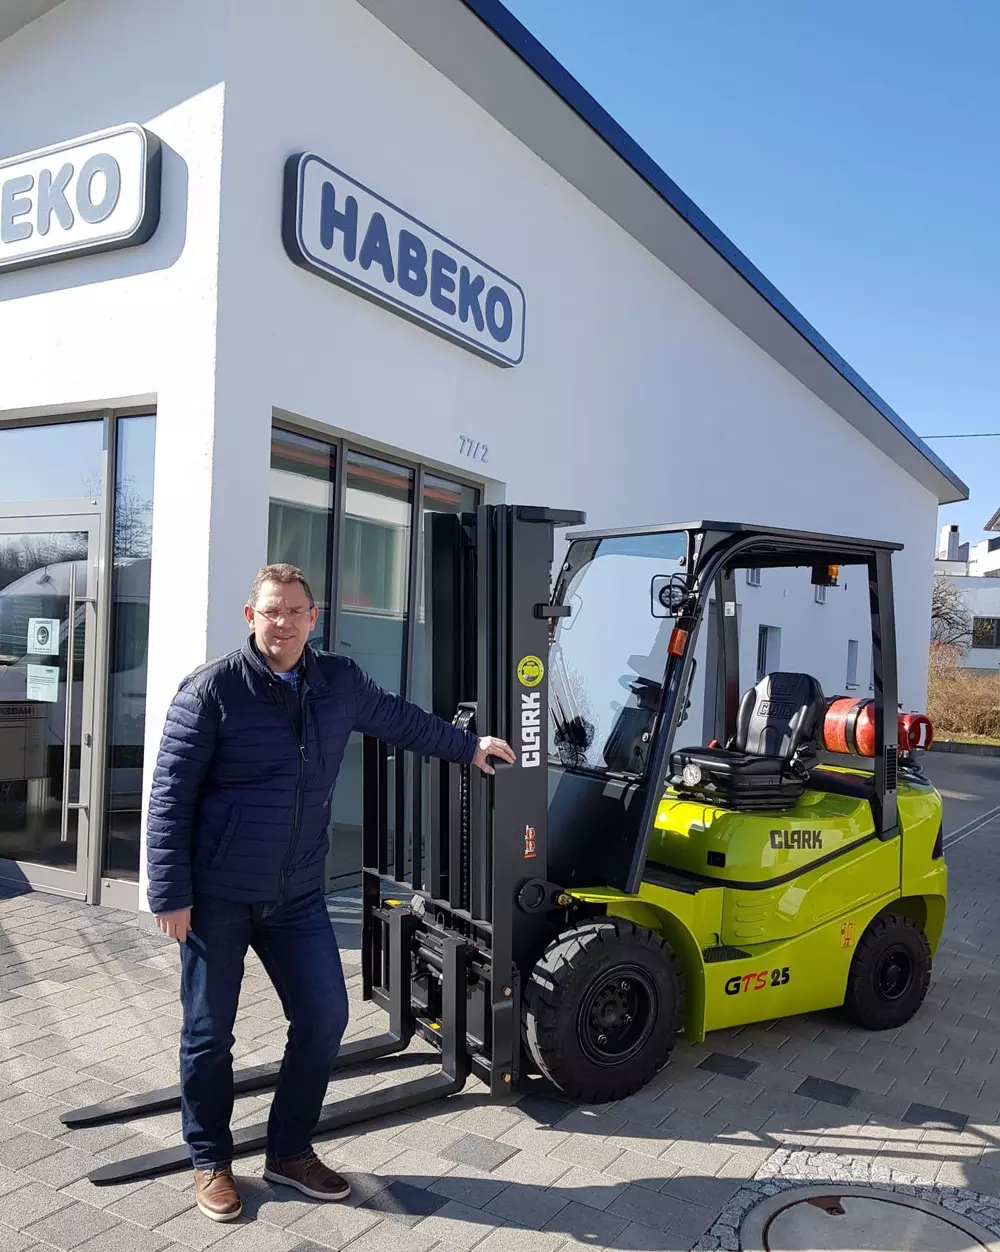 Ingénieur diplômé (FH) Dirk Hail, associé gérant de Habeko GmbH & Co. KG